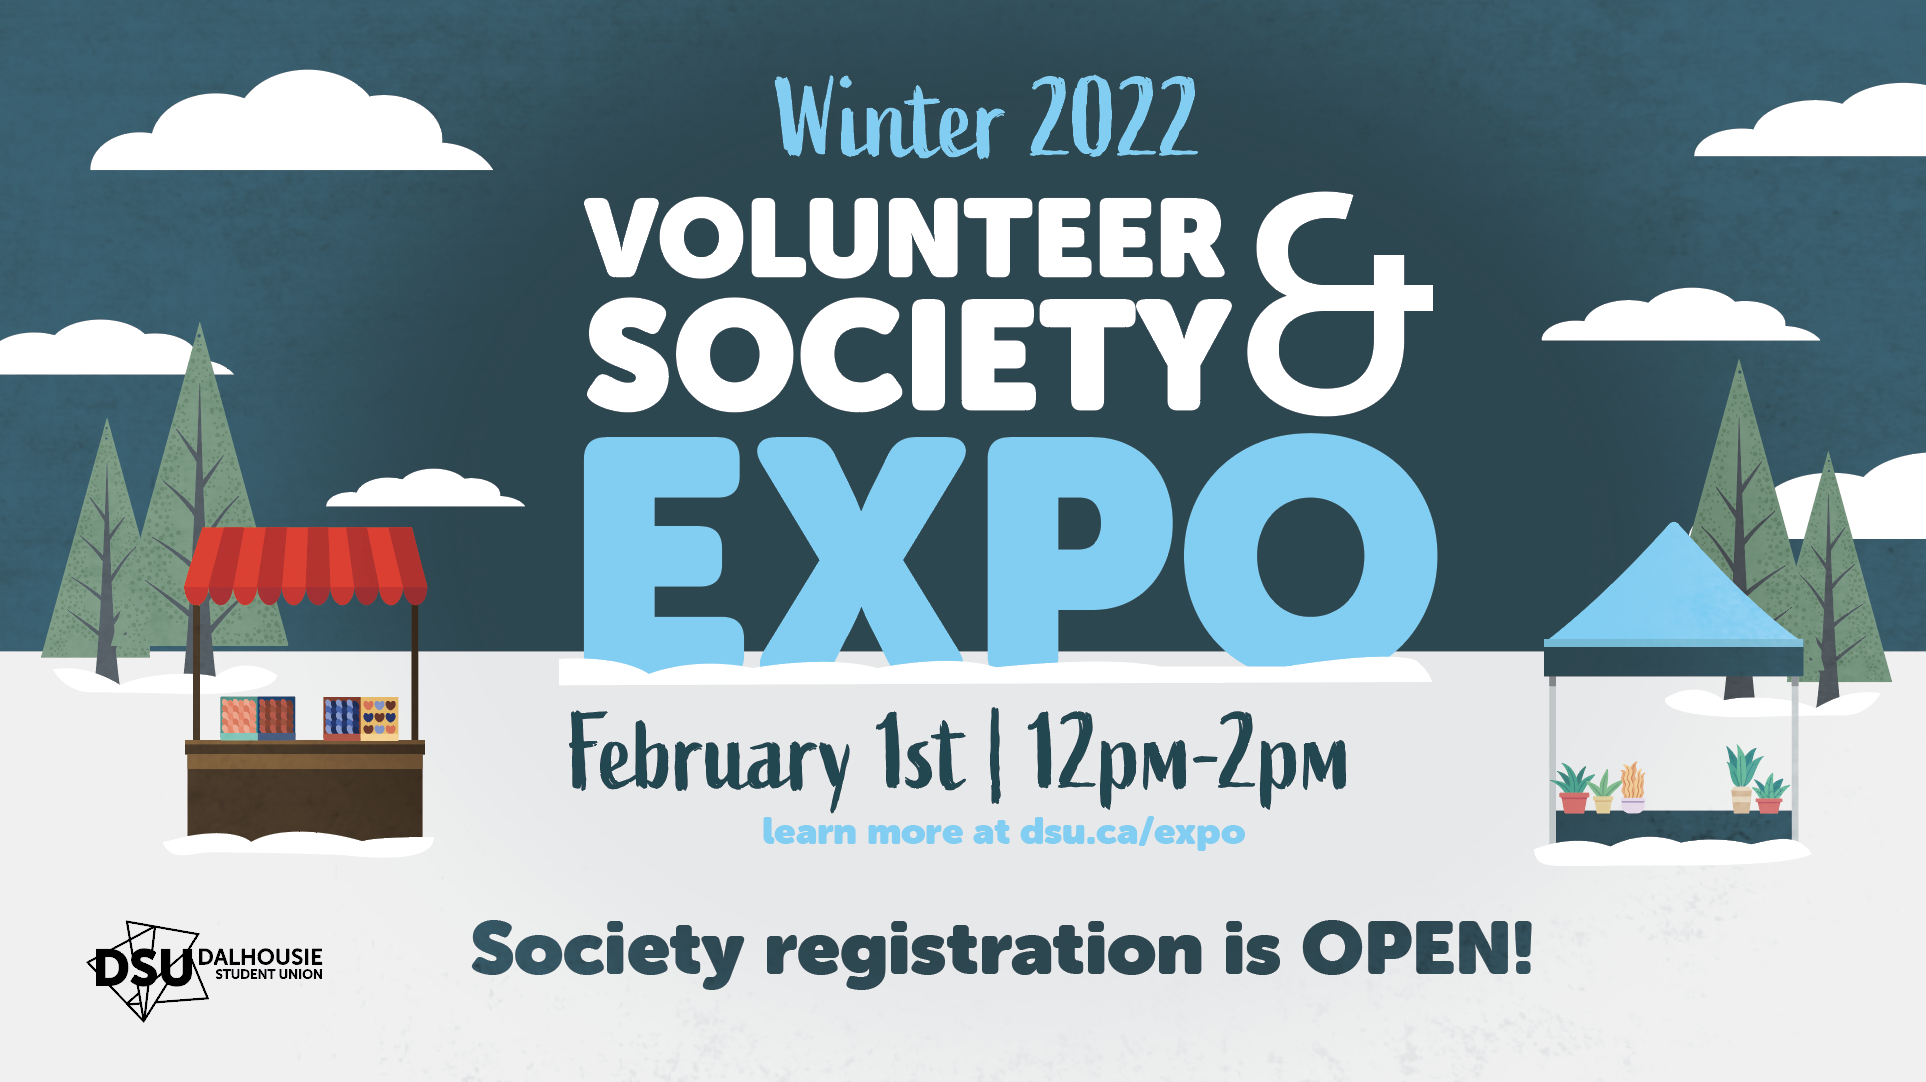 社会 & 志愿者博览会-社团登记为冬季社团开放 & 世博会的志愿者!